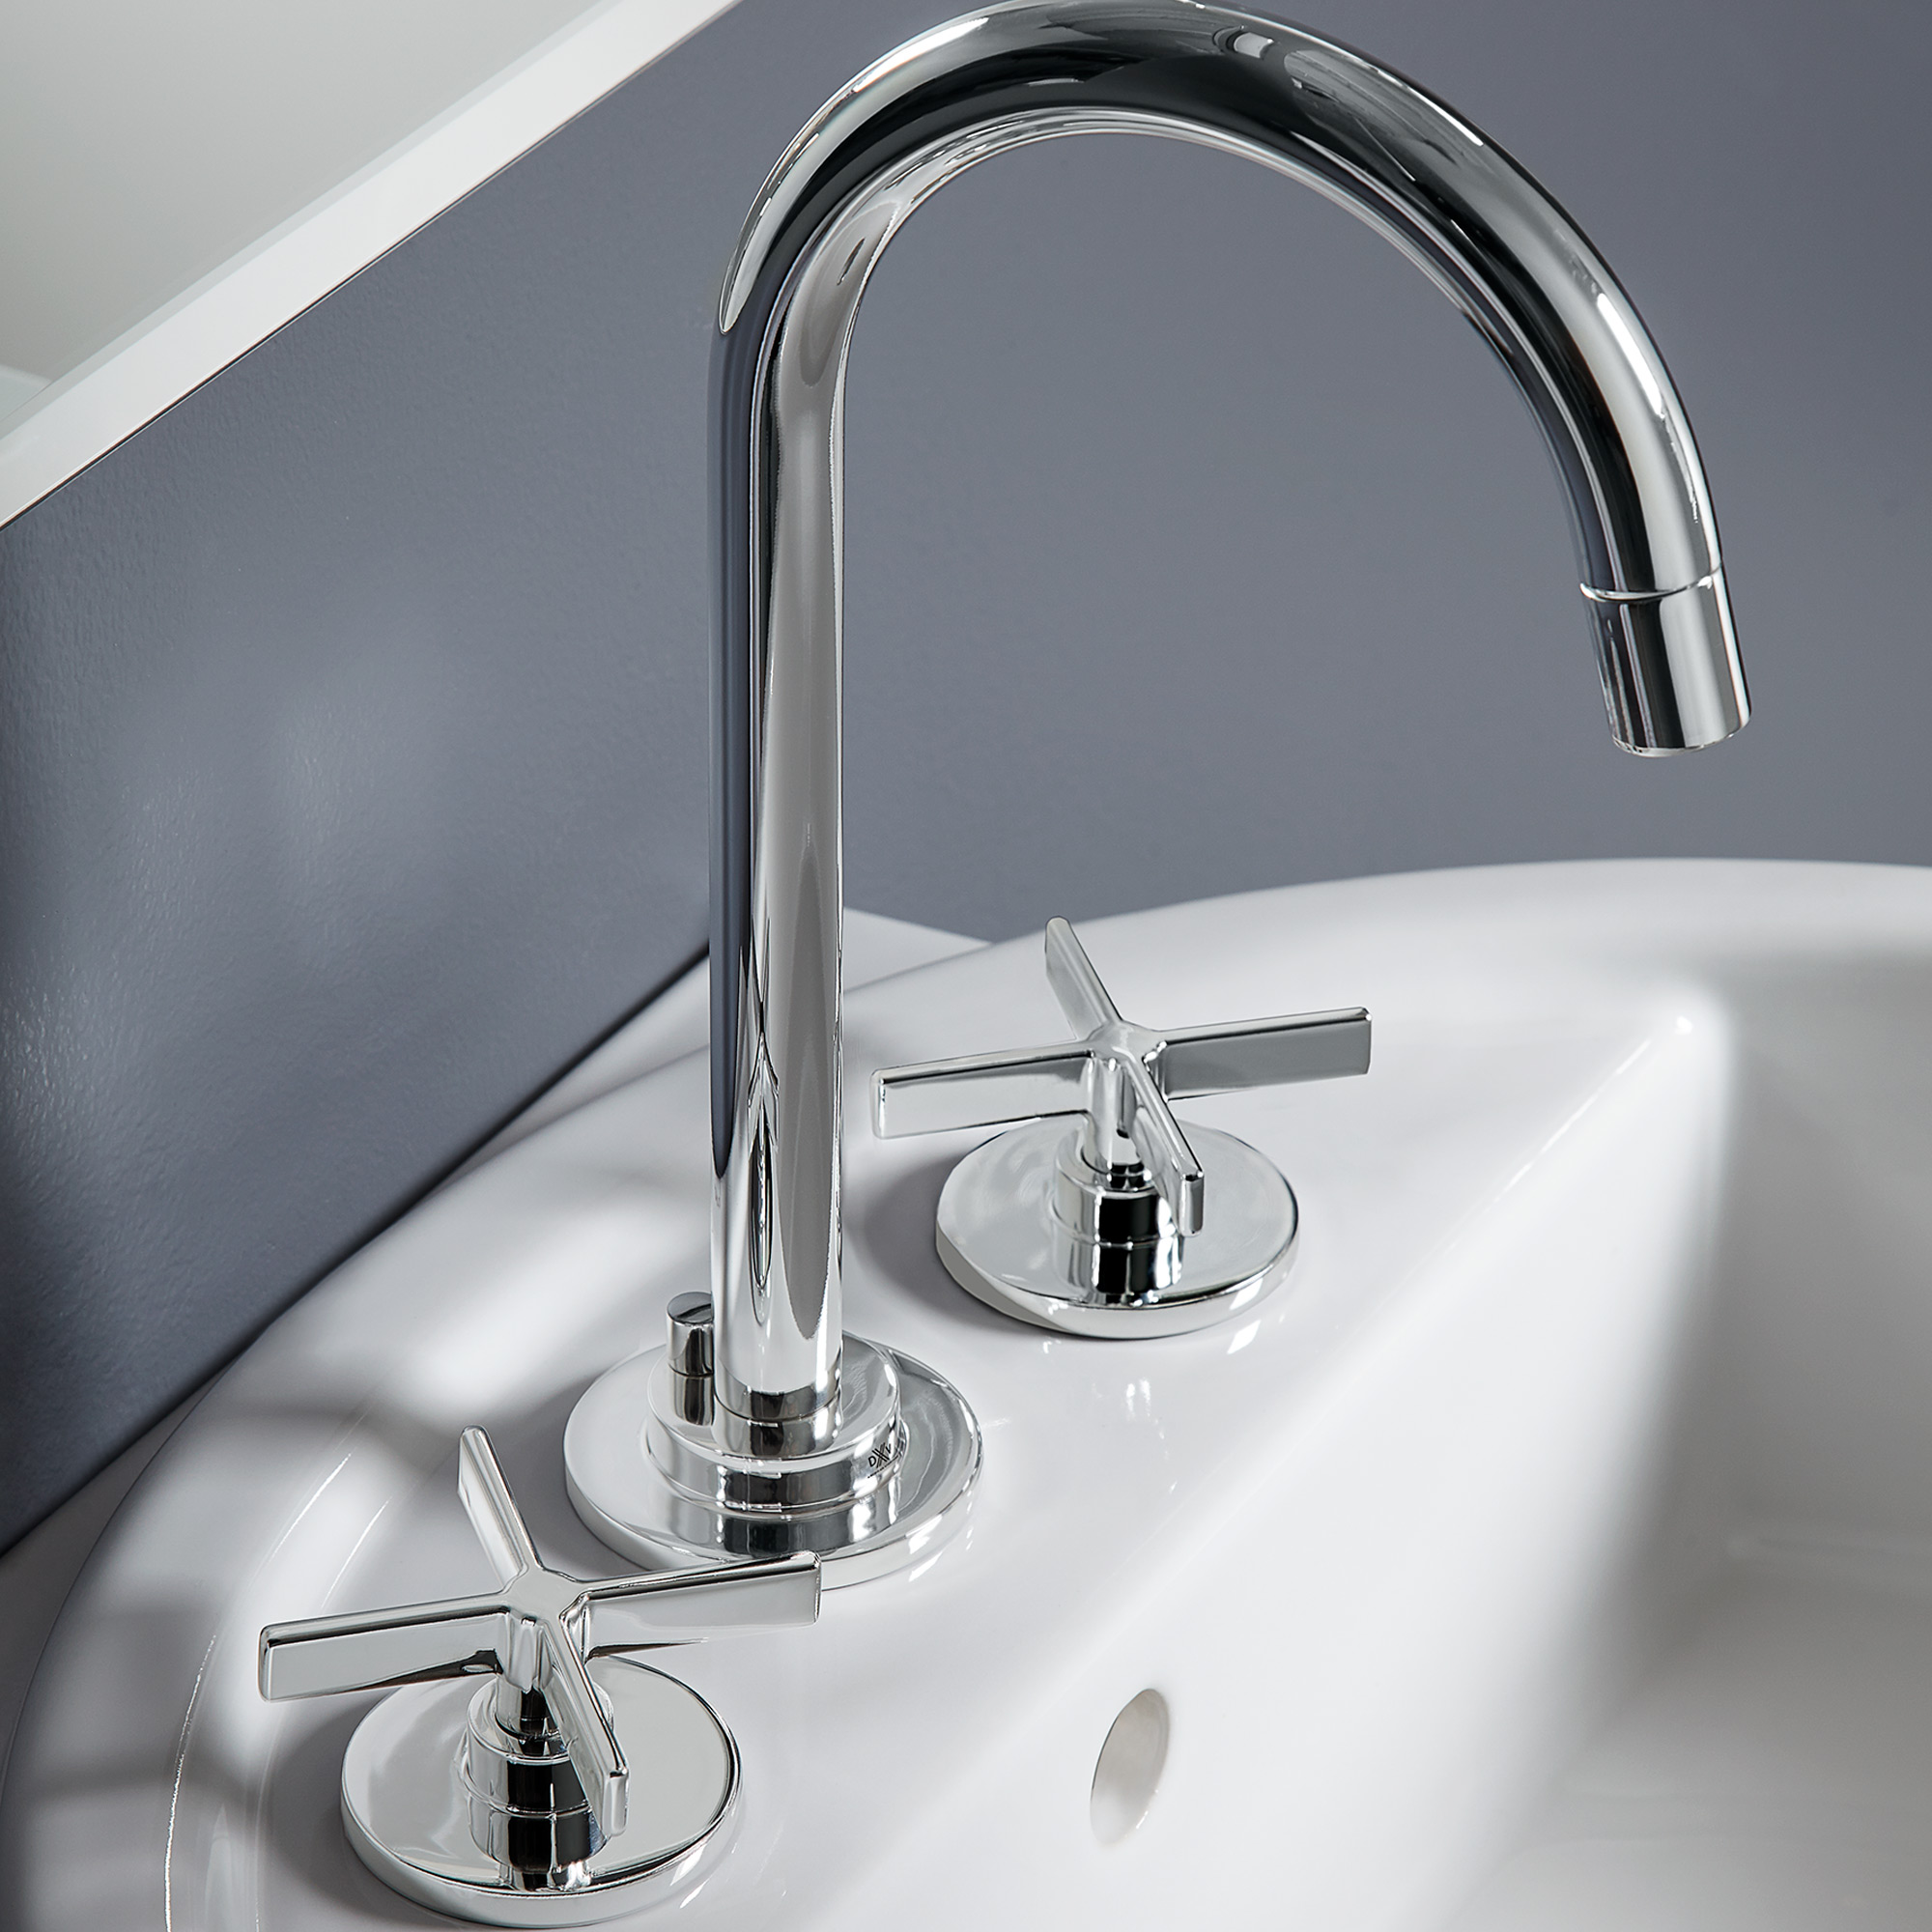 Percy® 2-Handle Widespread Bathroom Faucet with Cross Handles